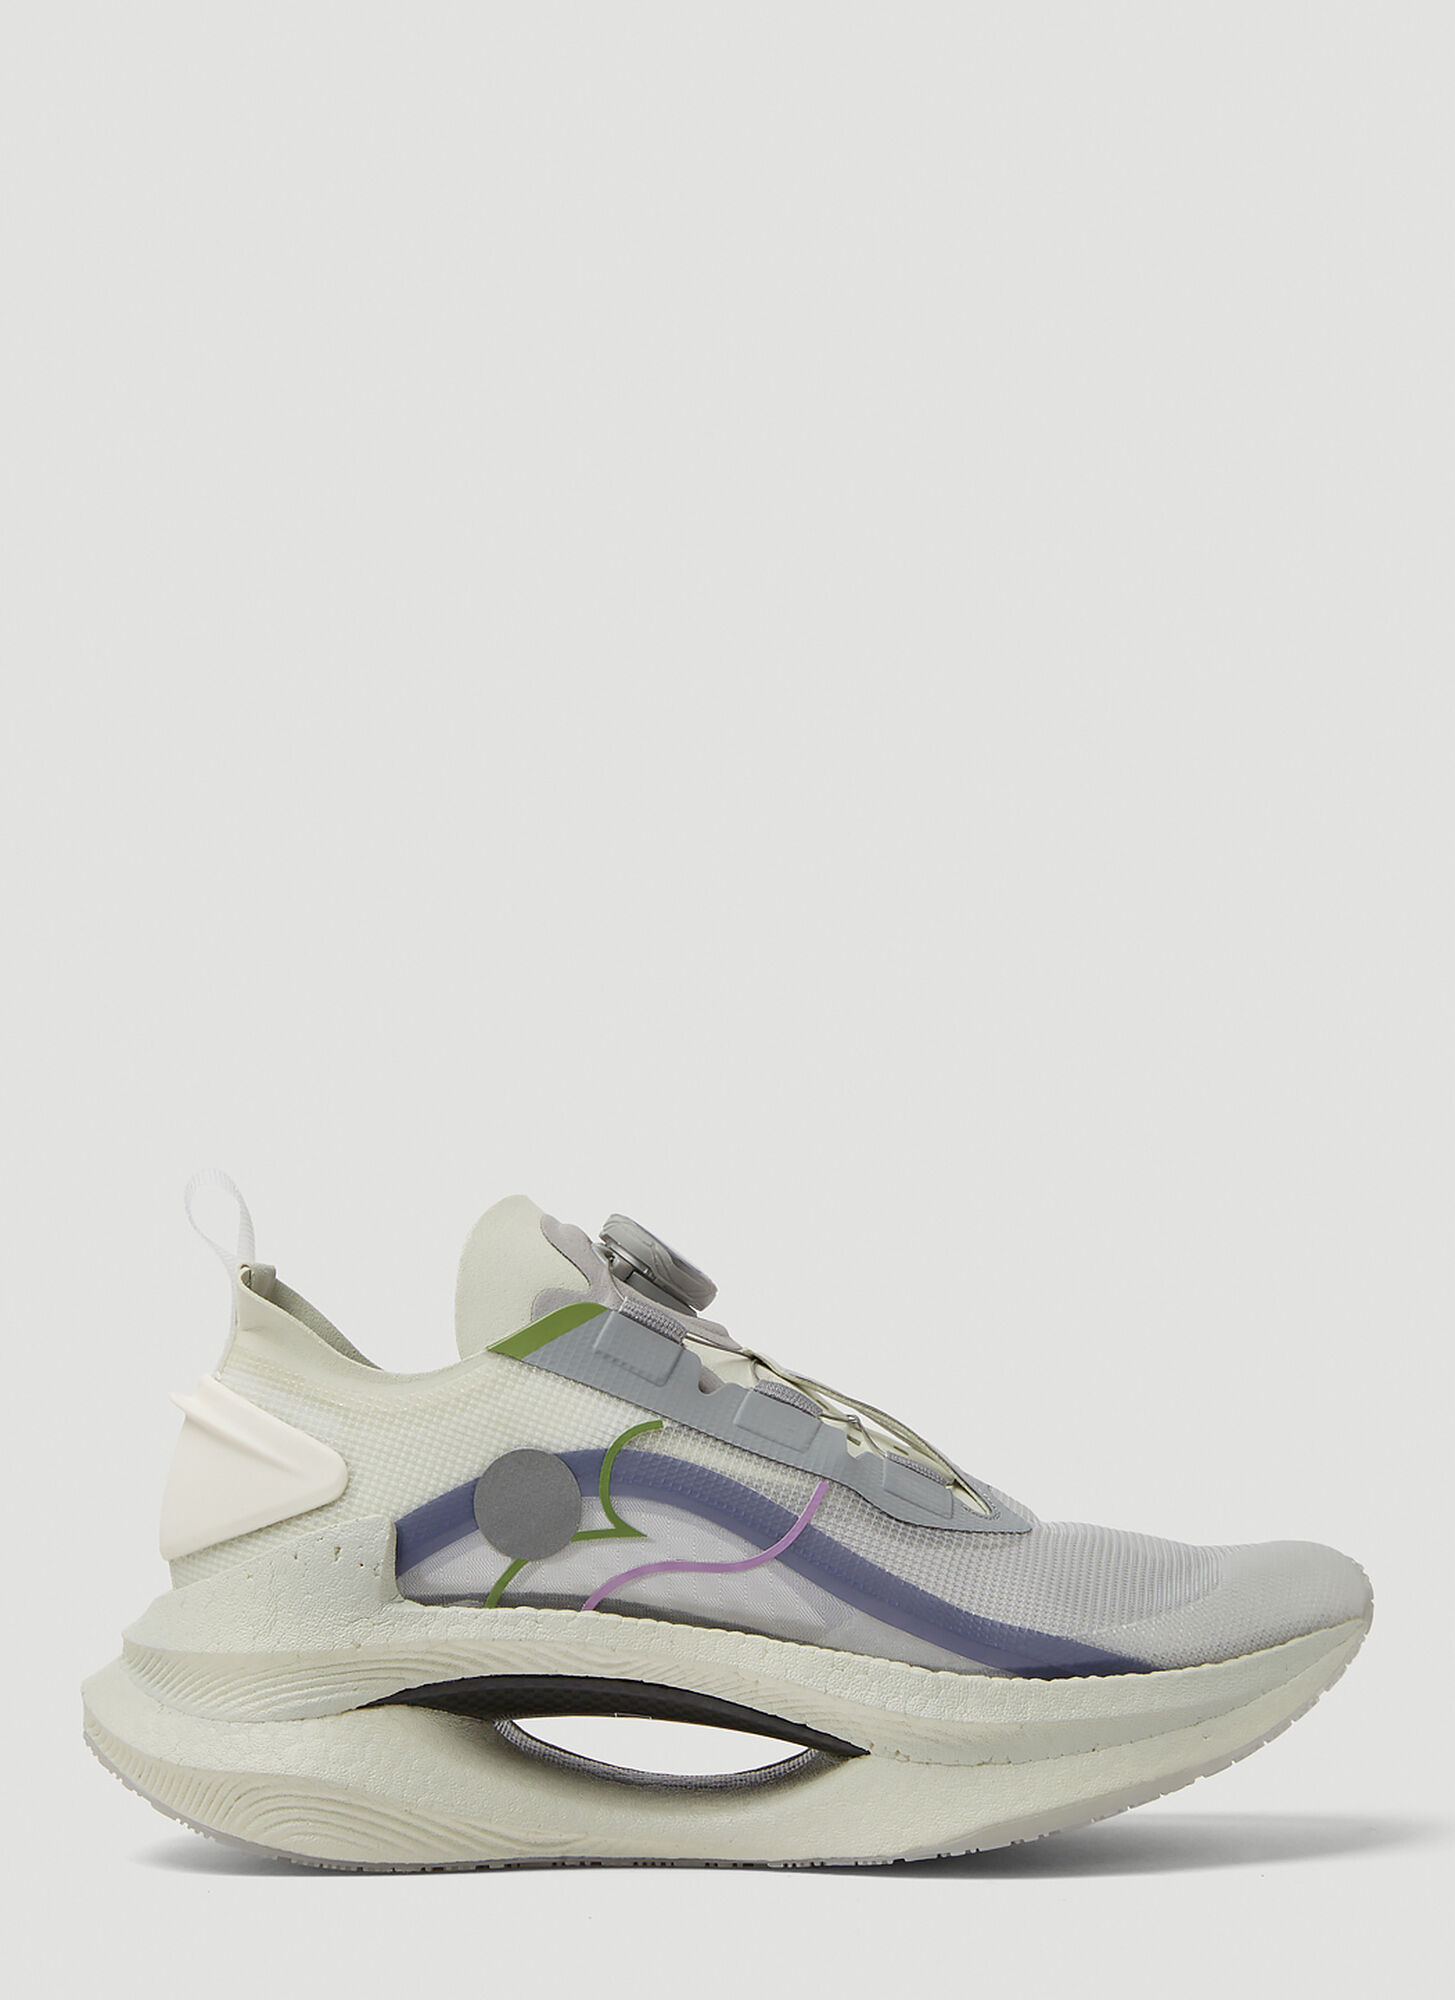 Soulland X Li-ning Shadow Sneakers In Light Grey